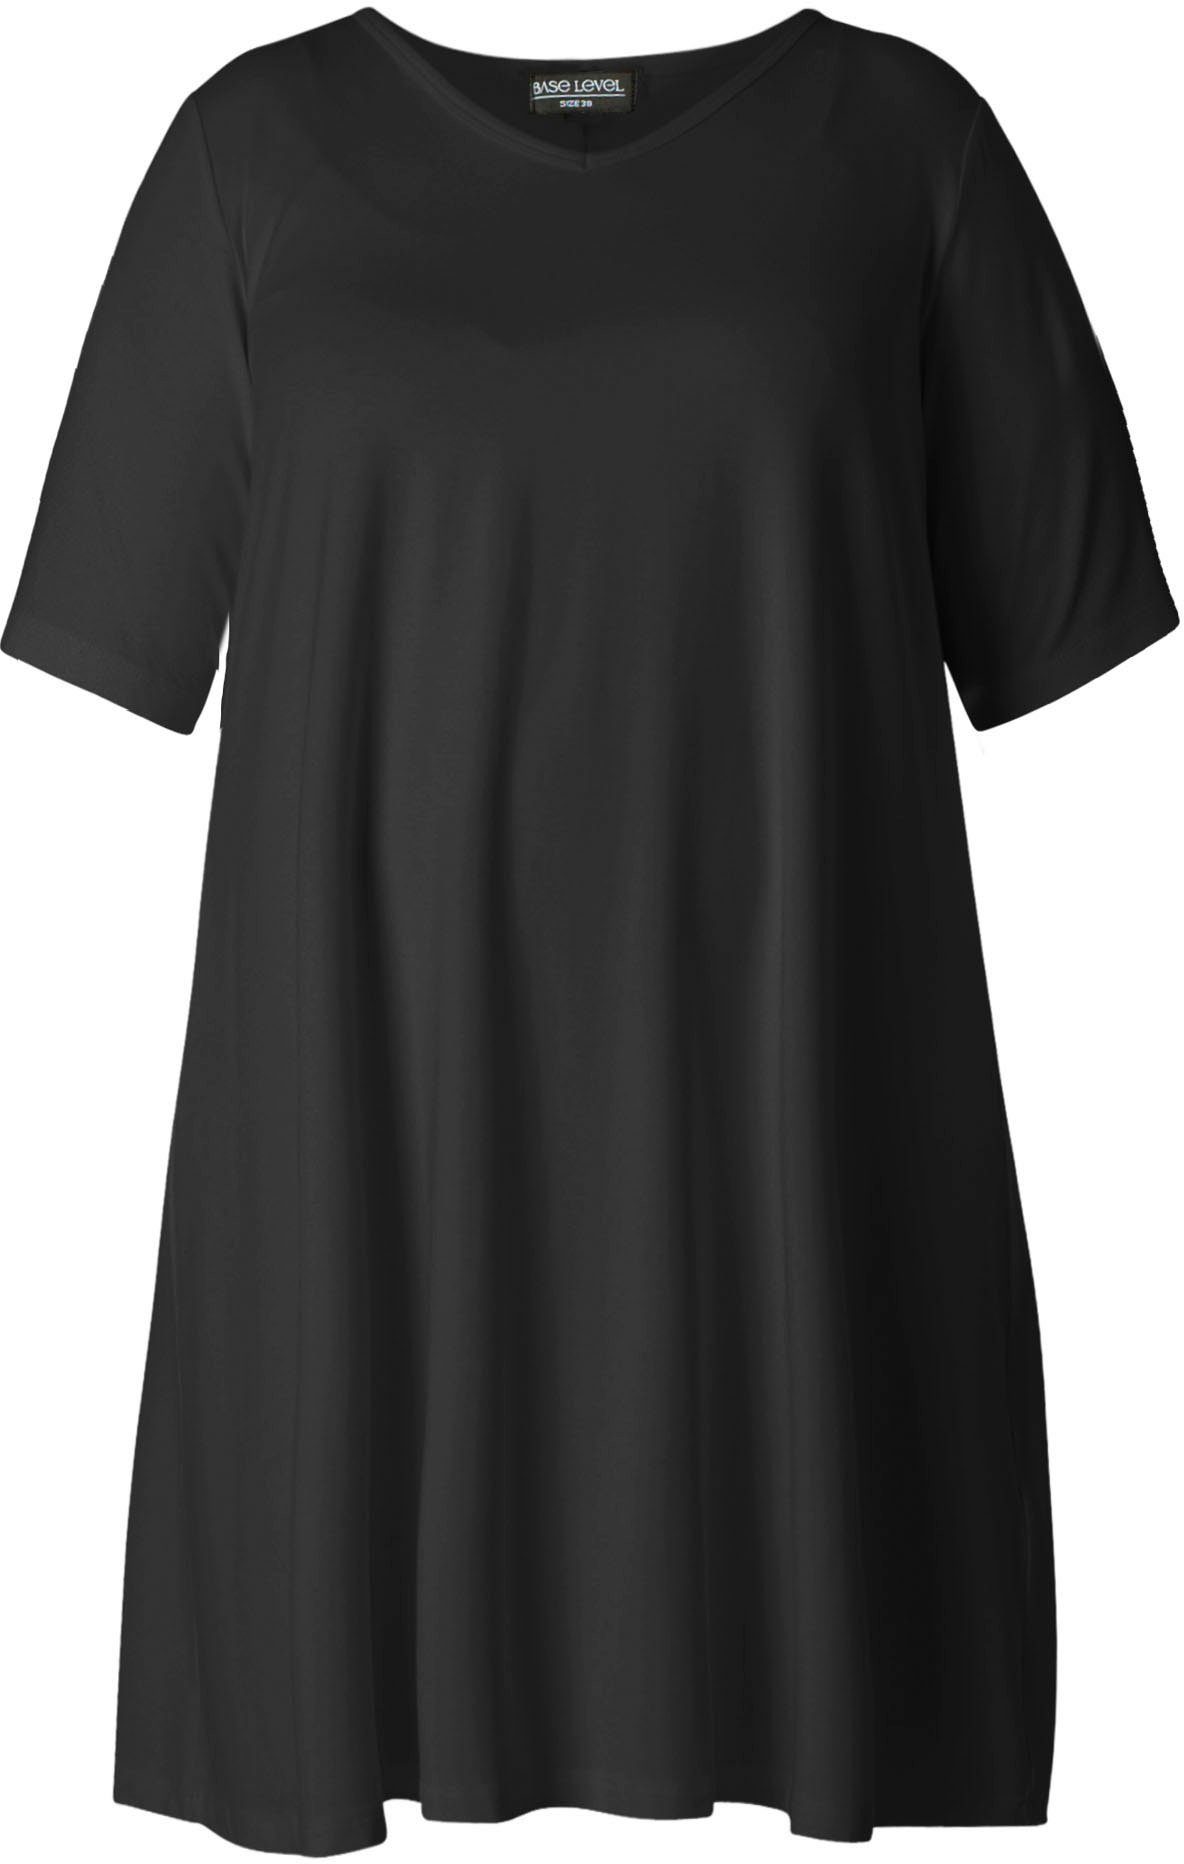 Curvy ausgestellter black In Level Base Abernathy Shirtkleid Form leicht